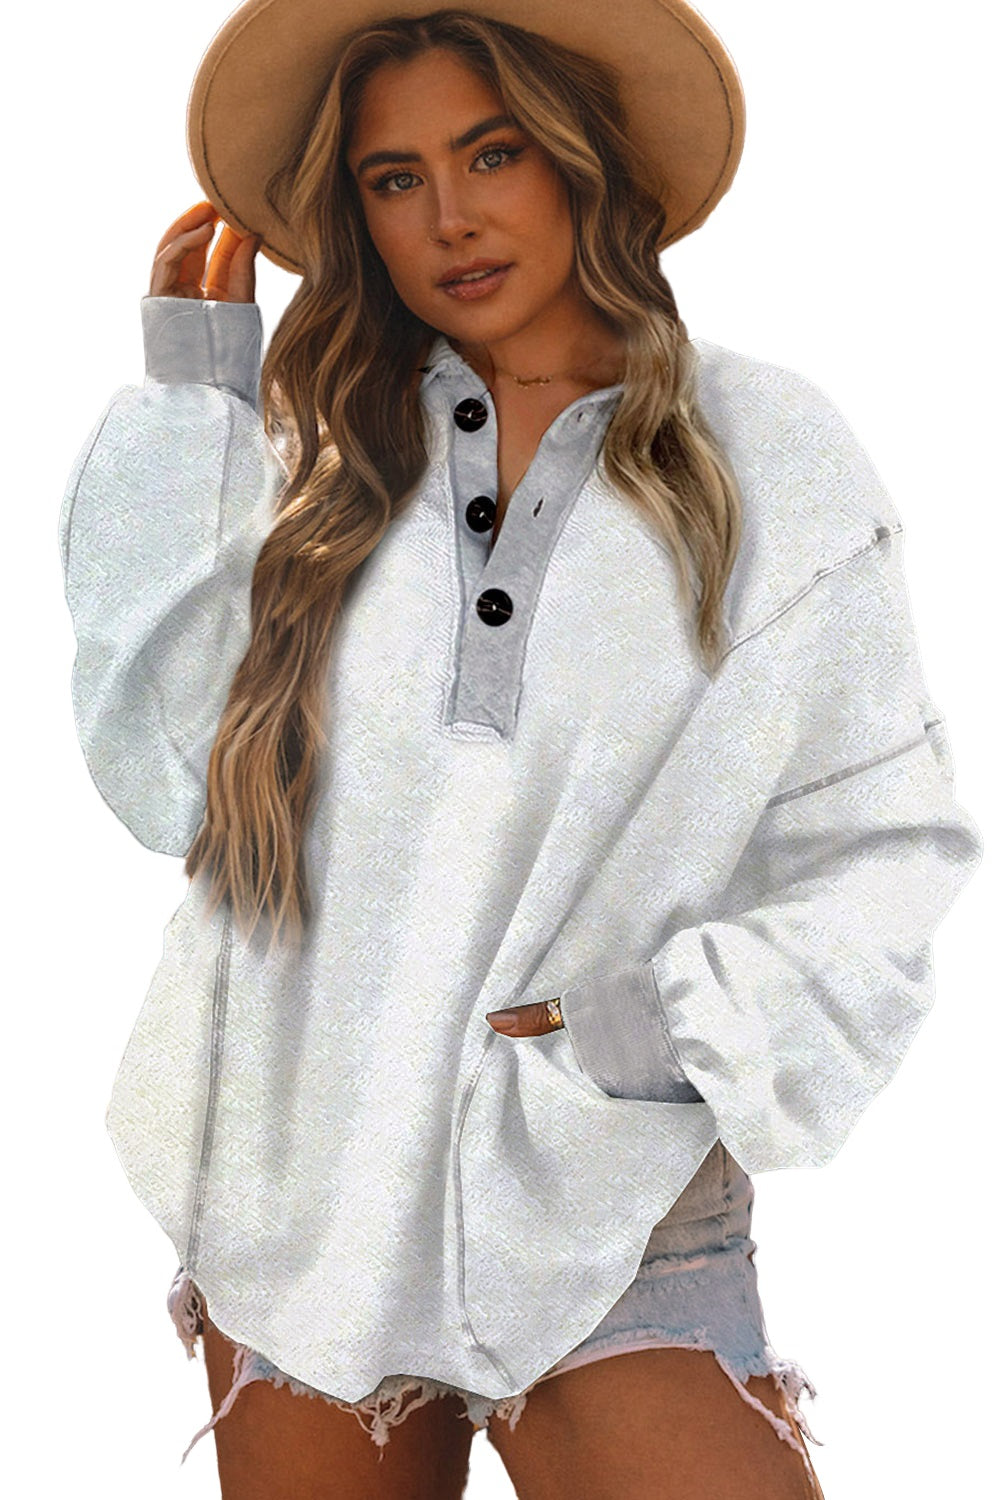 White Textured Side Pockets Buttoned Neckline Sweatshirt - SELFTRITSS